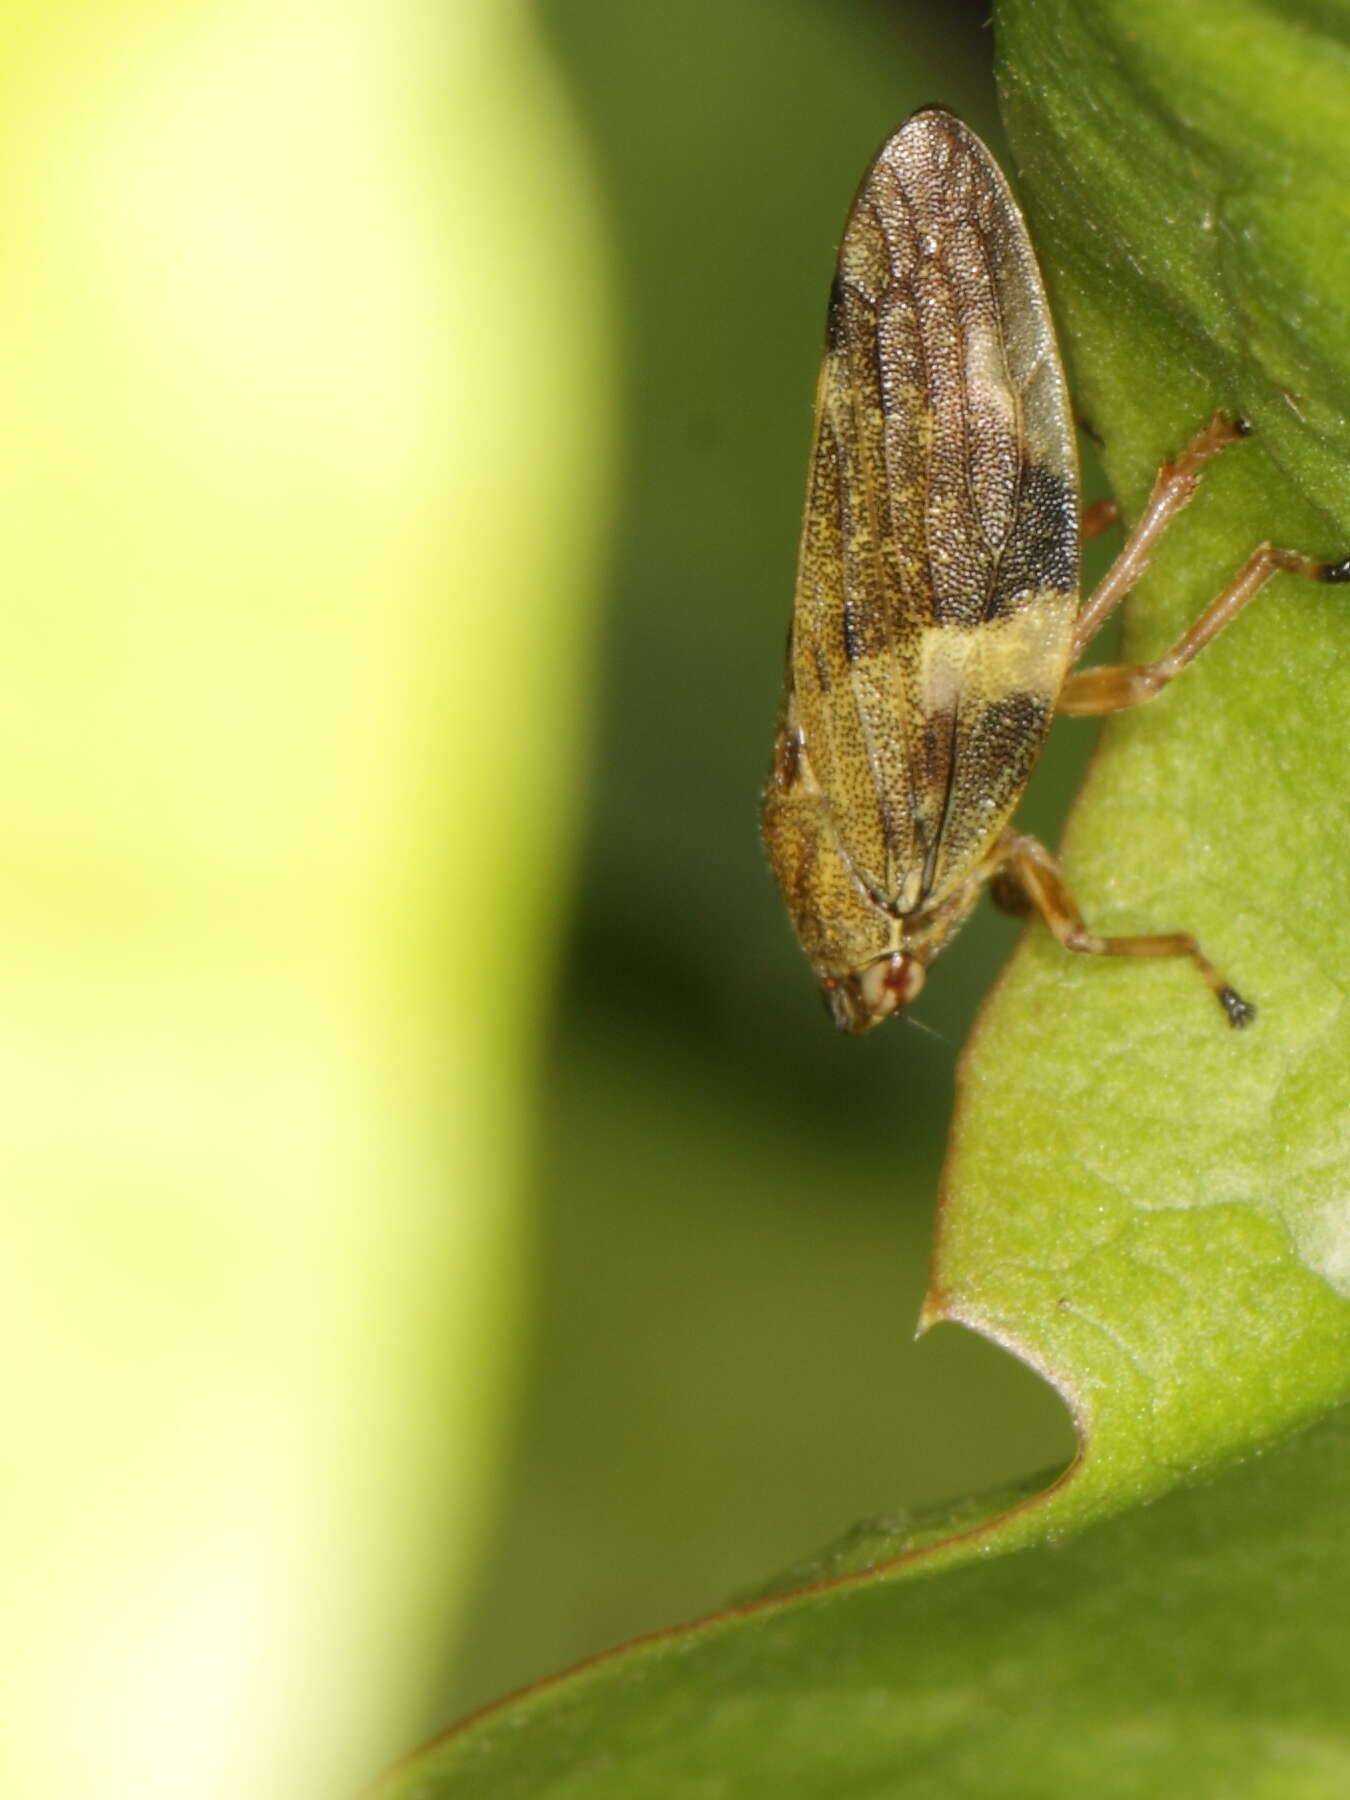 Image of cicadas and relatives